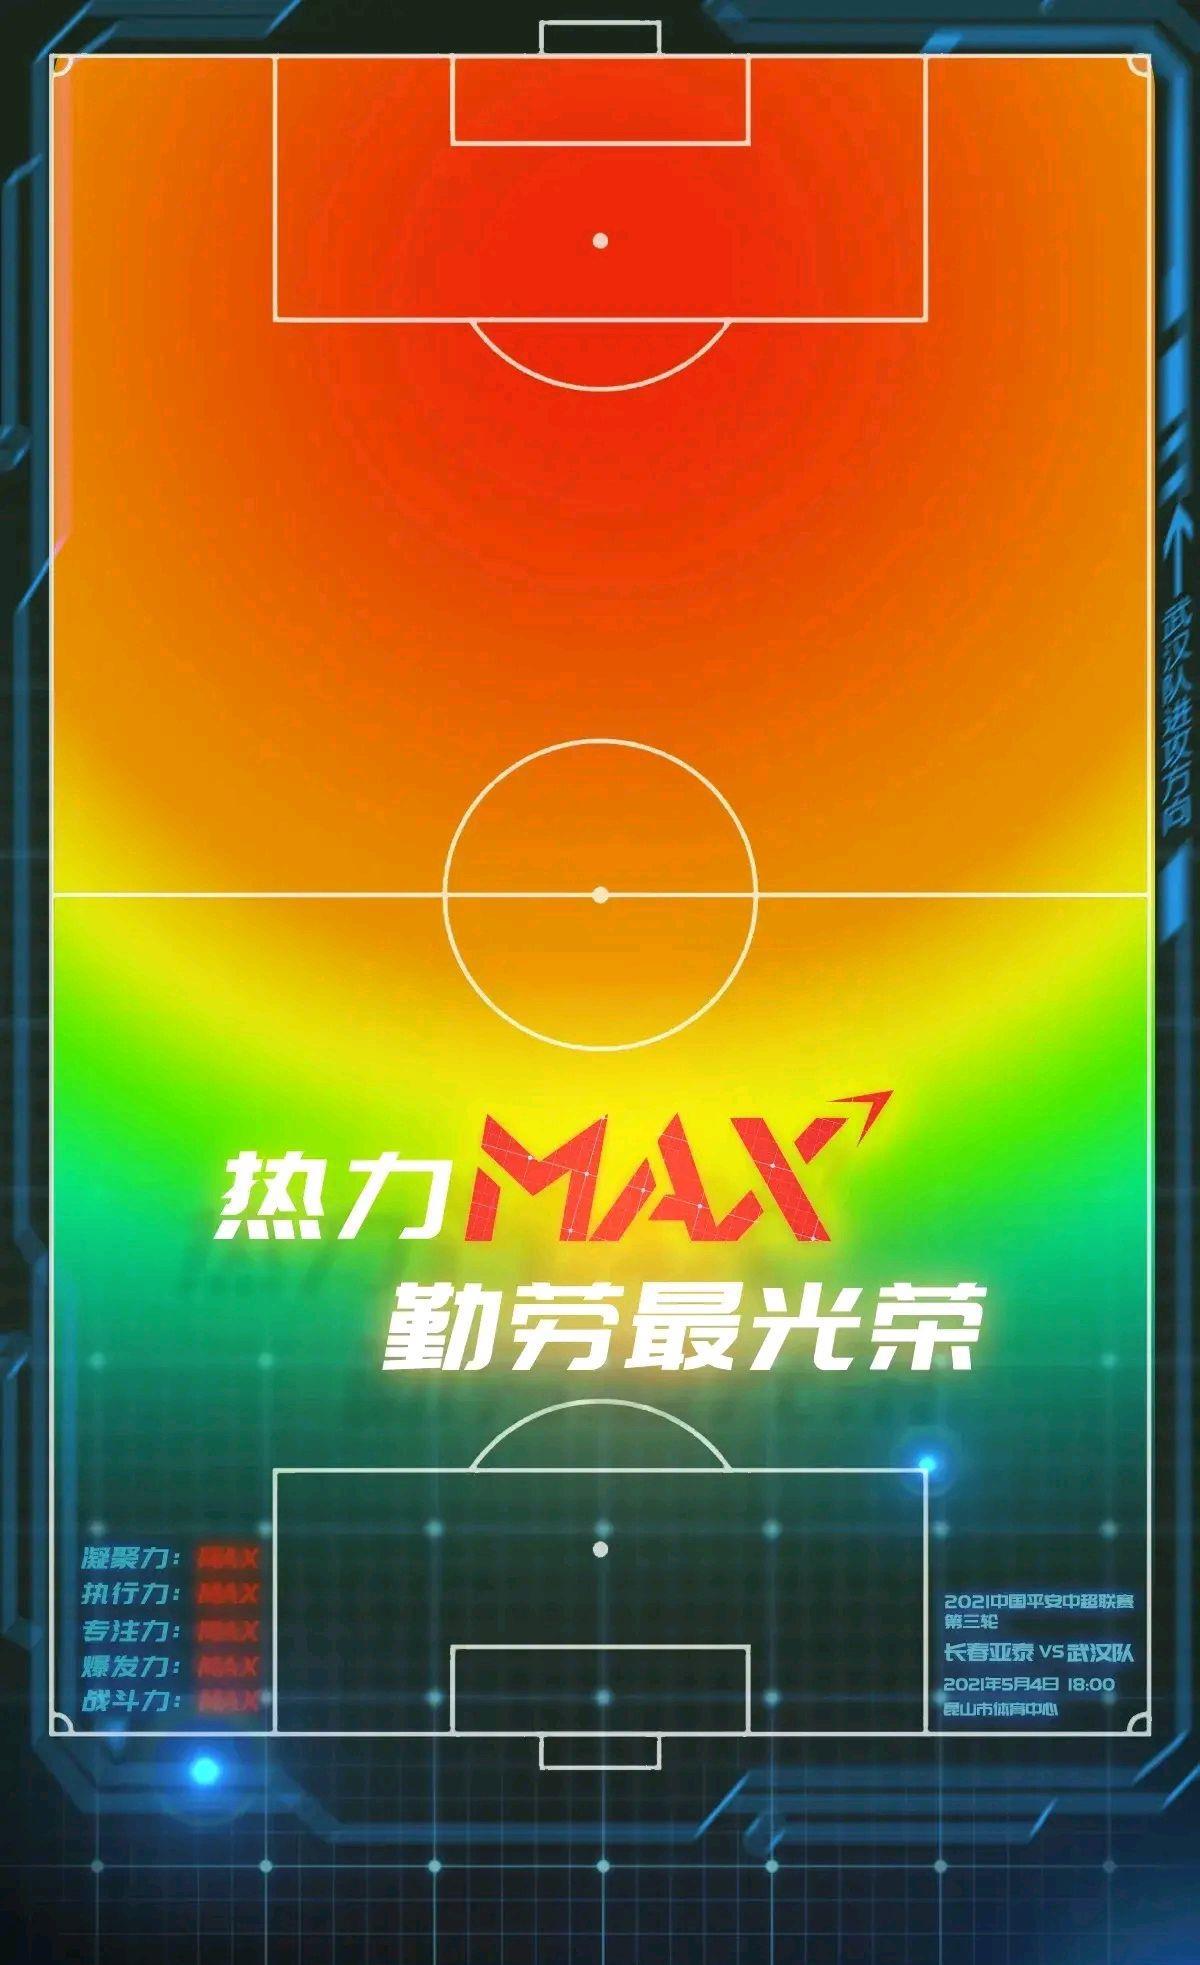 卓尔战亚泰海报来袭：热力max，勤劳最光荣(1)